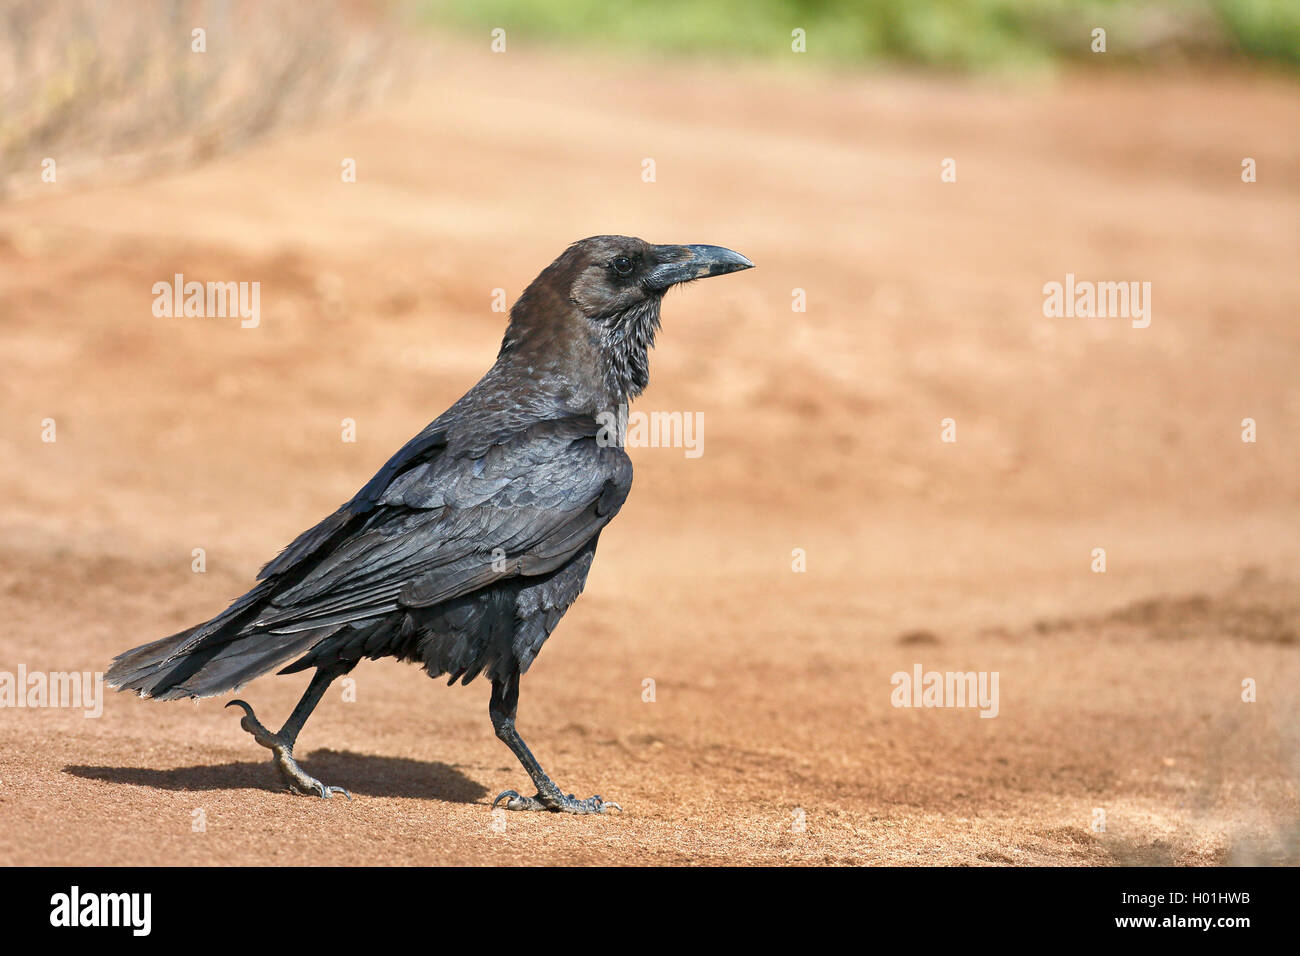 brown-necked raven (Corvus ruficollis), walking, Cap Verde Islands, Boavista Stock Photo